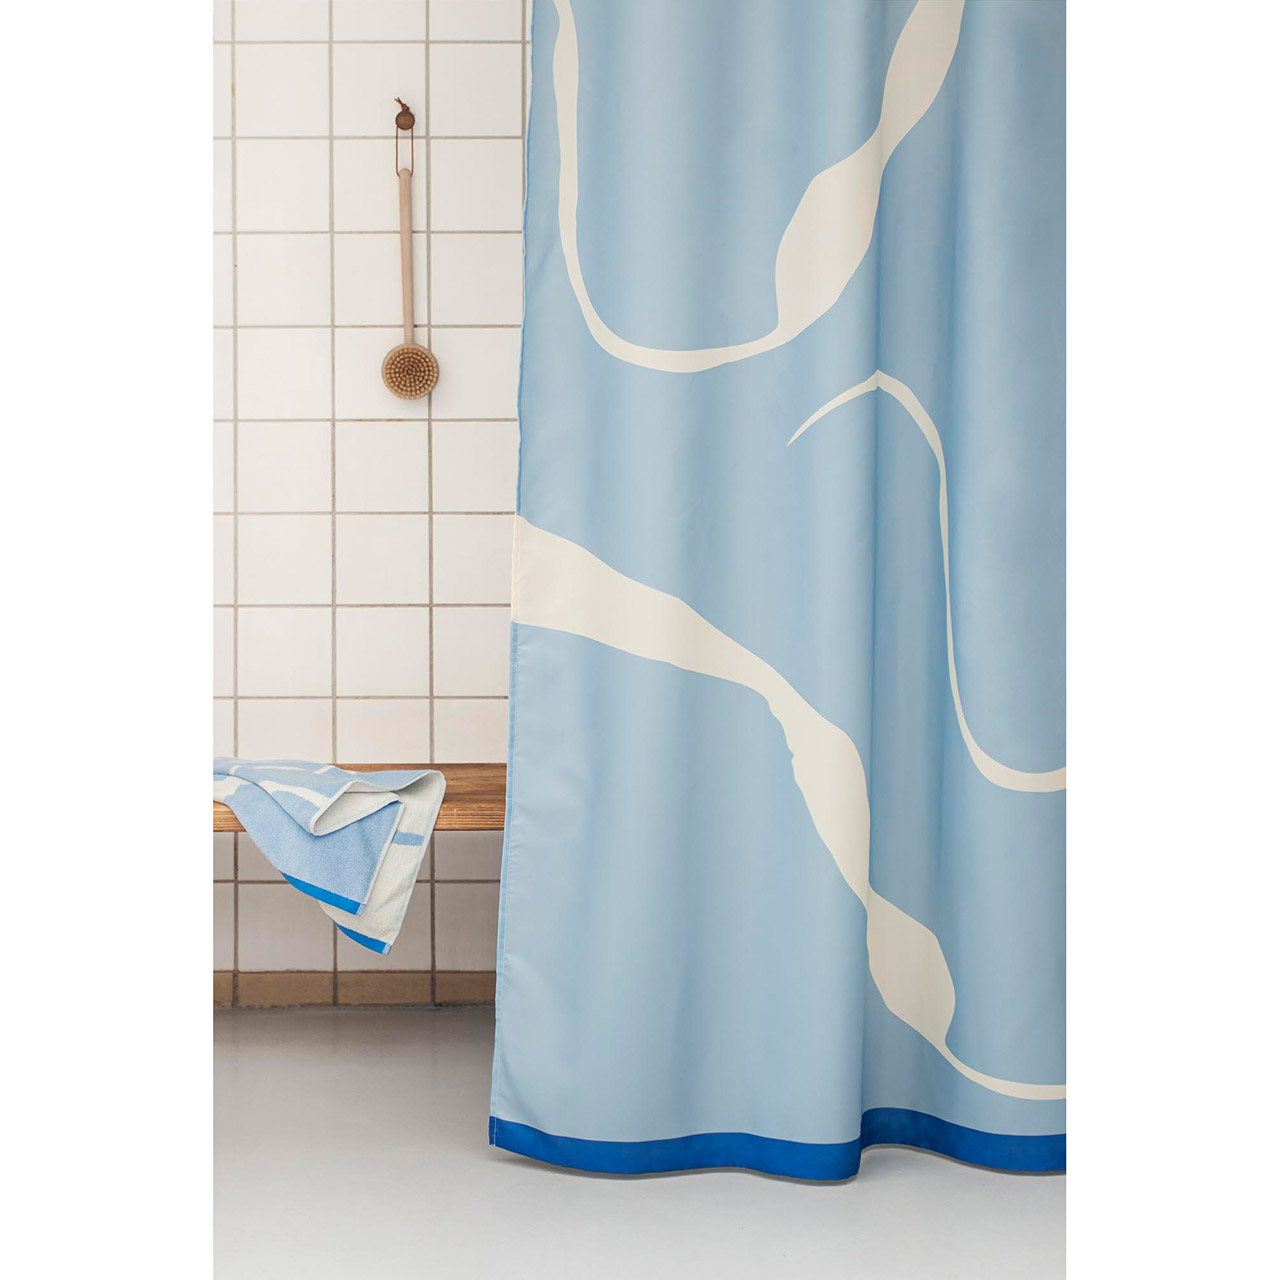 Textil Duschvorhang blau 150x200 Nova Arte | Duschvorhang.de, einfach gute  Duschvorhänge